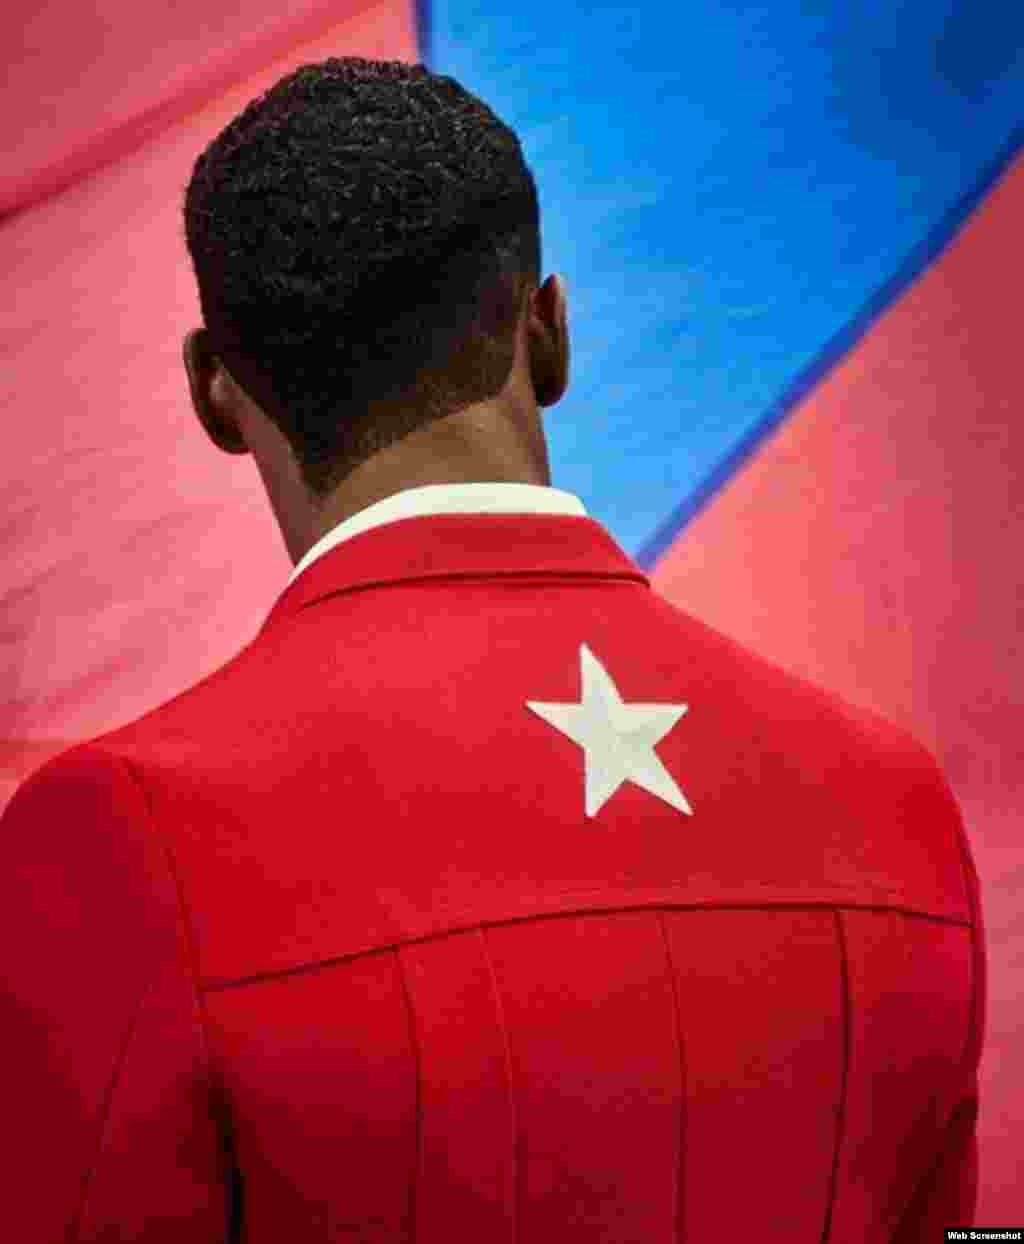 Anuncio promocional del diseñador francés Christian Louboutin, quien junto a su compatriota Henri Tai han diseñado la ropa y calzado de los atletas cubanos que competirán en las olimpiadas de Río de Janeiro 2016. Tomado de christianlouboutin.com.